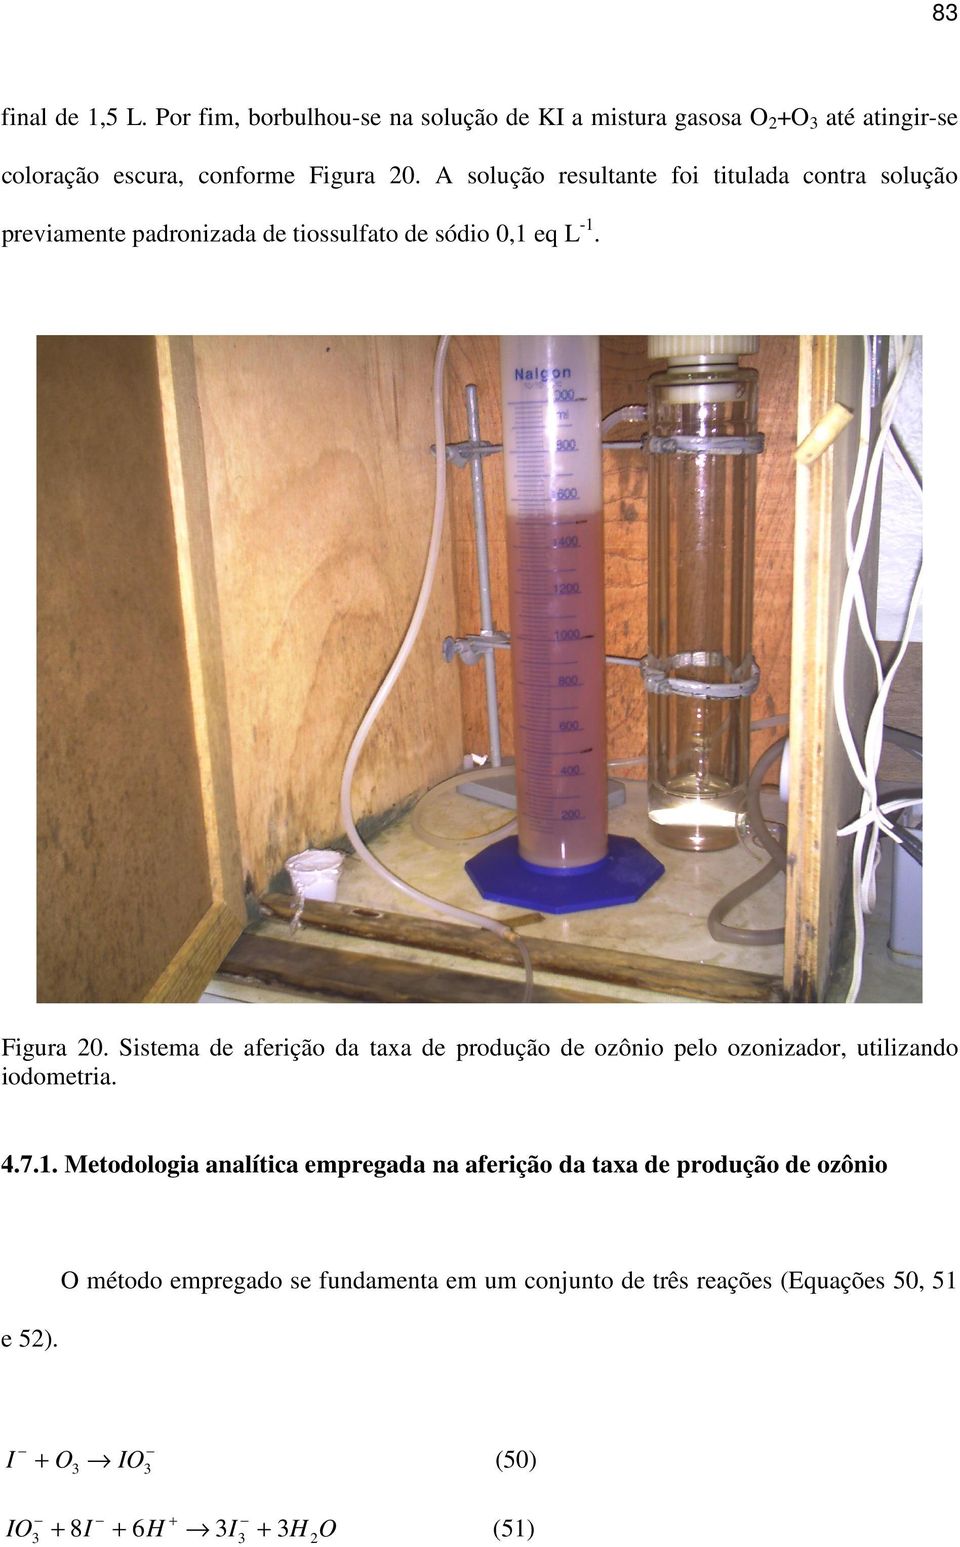 Sistema de aferição da taxa de produção de ozônio pelo ozonizador, utilizando iodometria. 4.7.1.